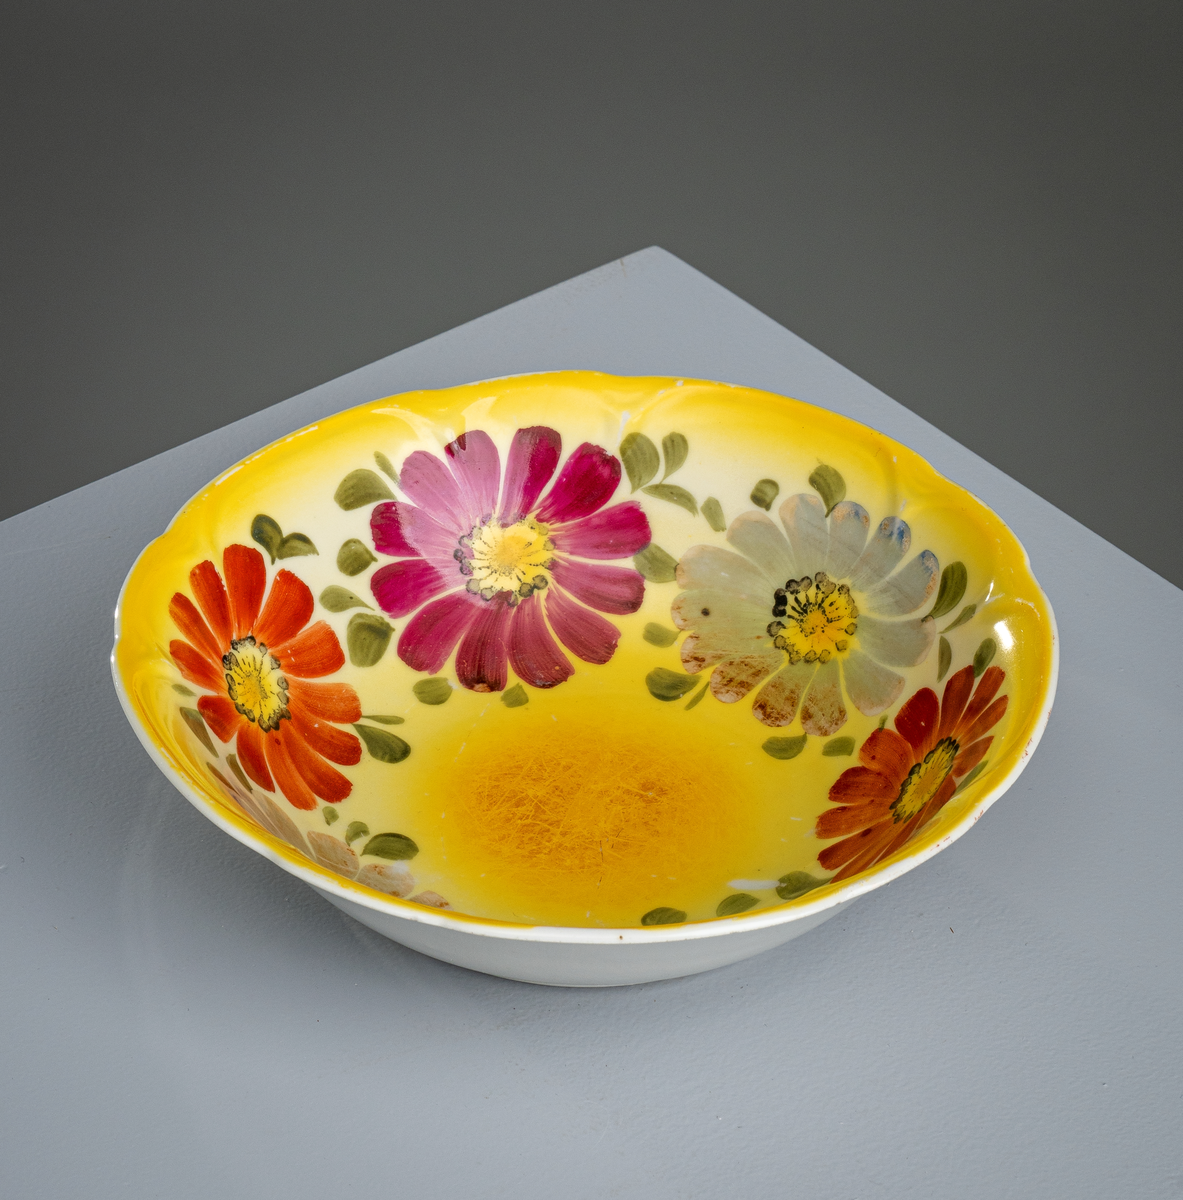 En suppebolle av keramikk/porselen. Den har klassisk "bolleform". Innvendig er den gul med påmalte blomster og blader. Det er ialt seks blomster (to rødoransje, to burgunderfargede og to grågrønne) med små brønne blader. Utsiden er hvitglasert.